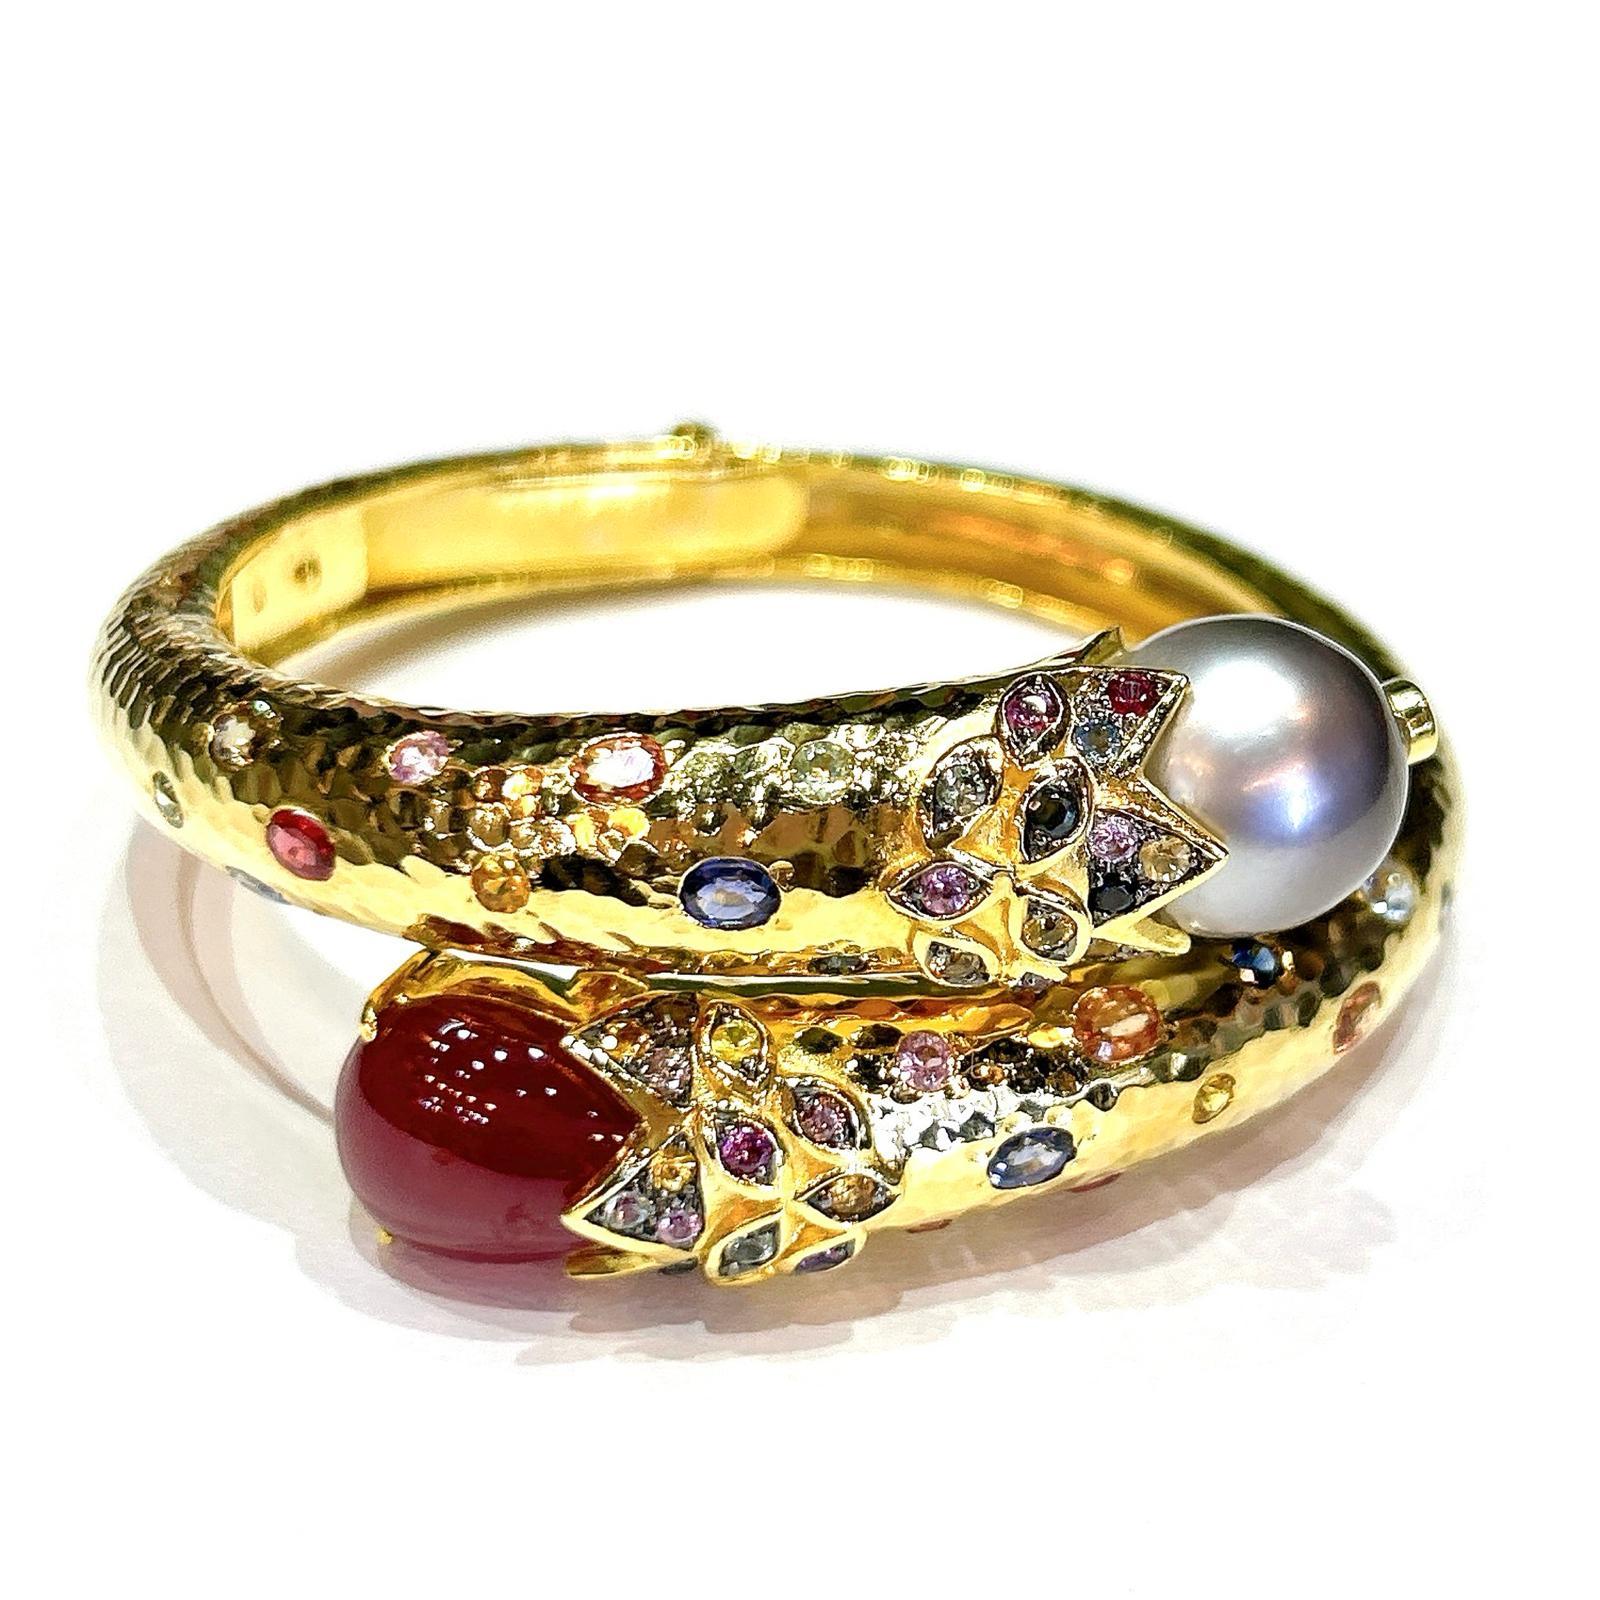 Taille brillant Bracelet jonc Bochic Orient en or et argent 18 carats serti de perles des mers du Sud, rubis et saphirs en vente